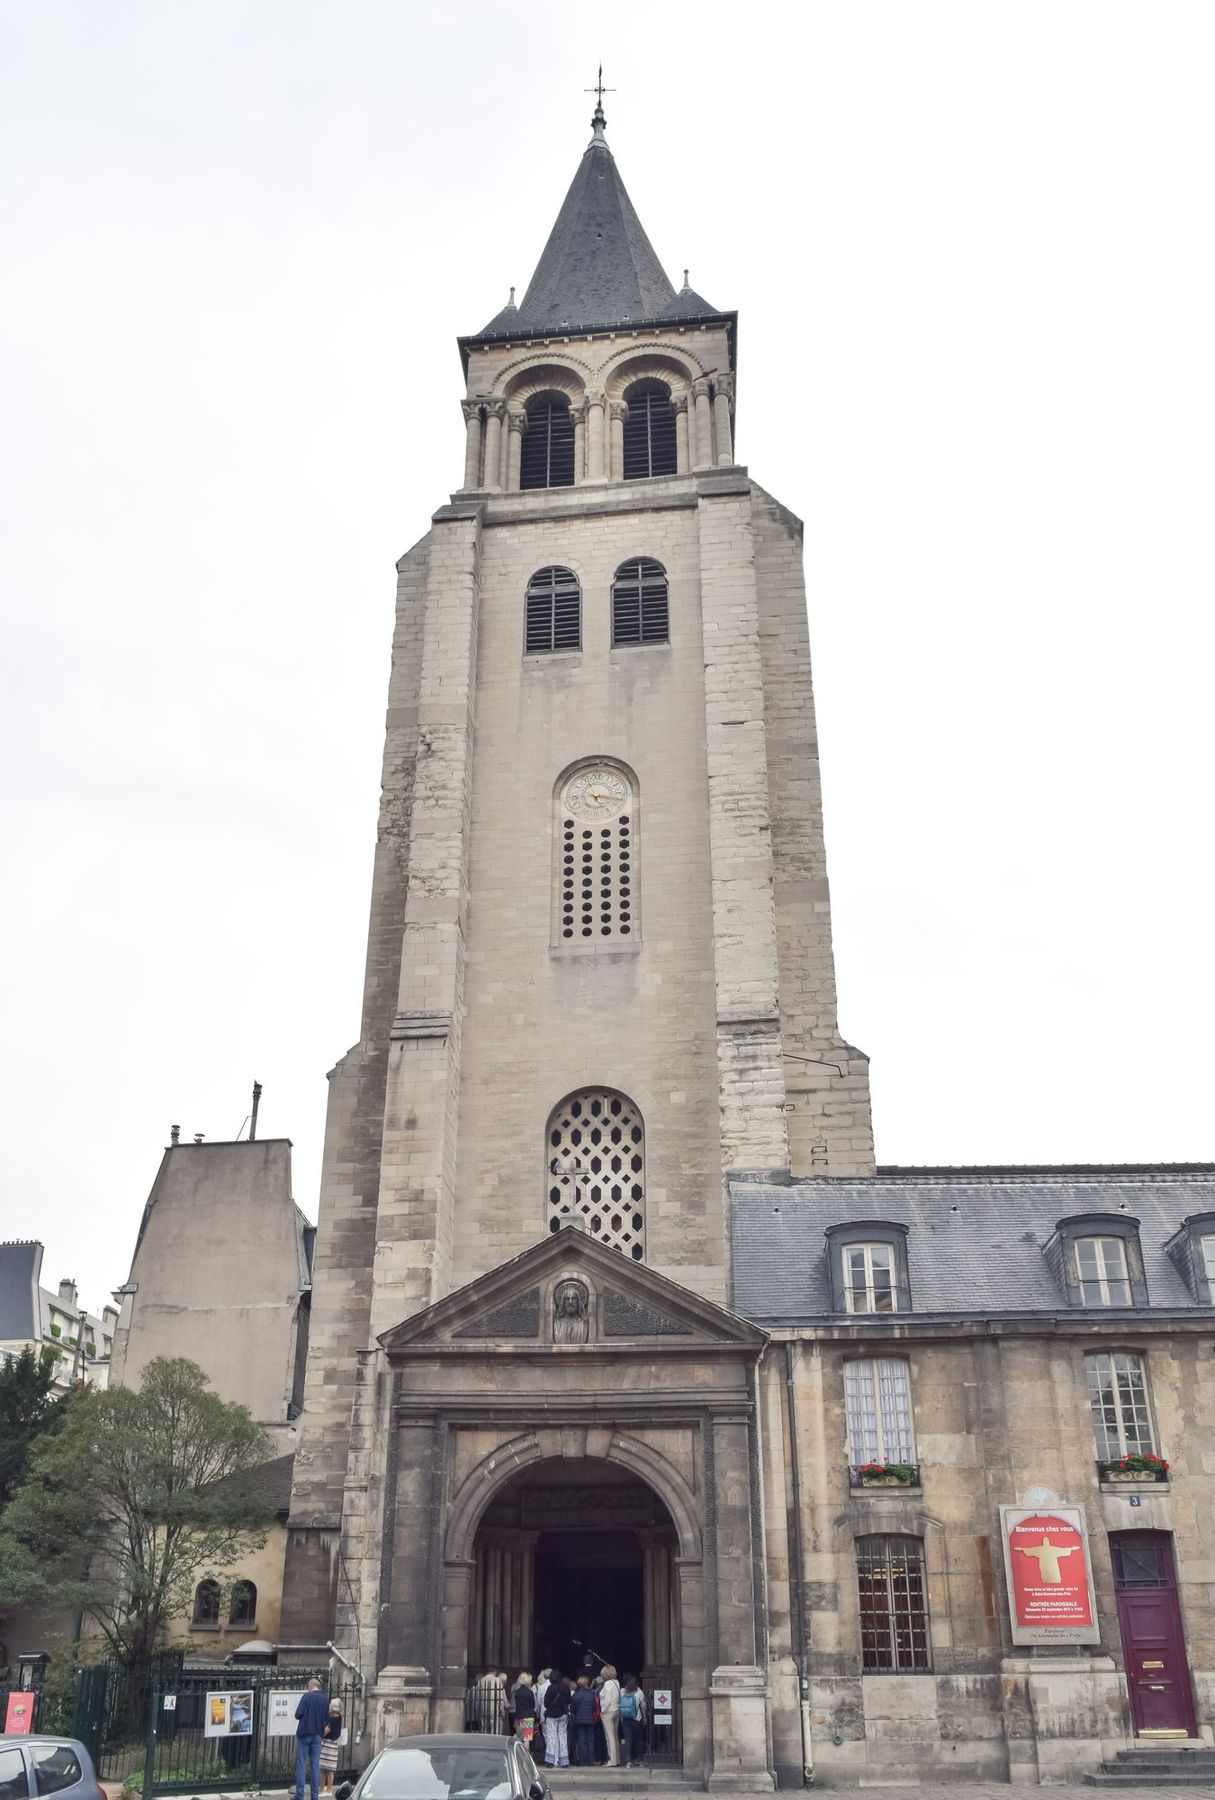 Saint-Germain-des-Pres Church